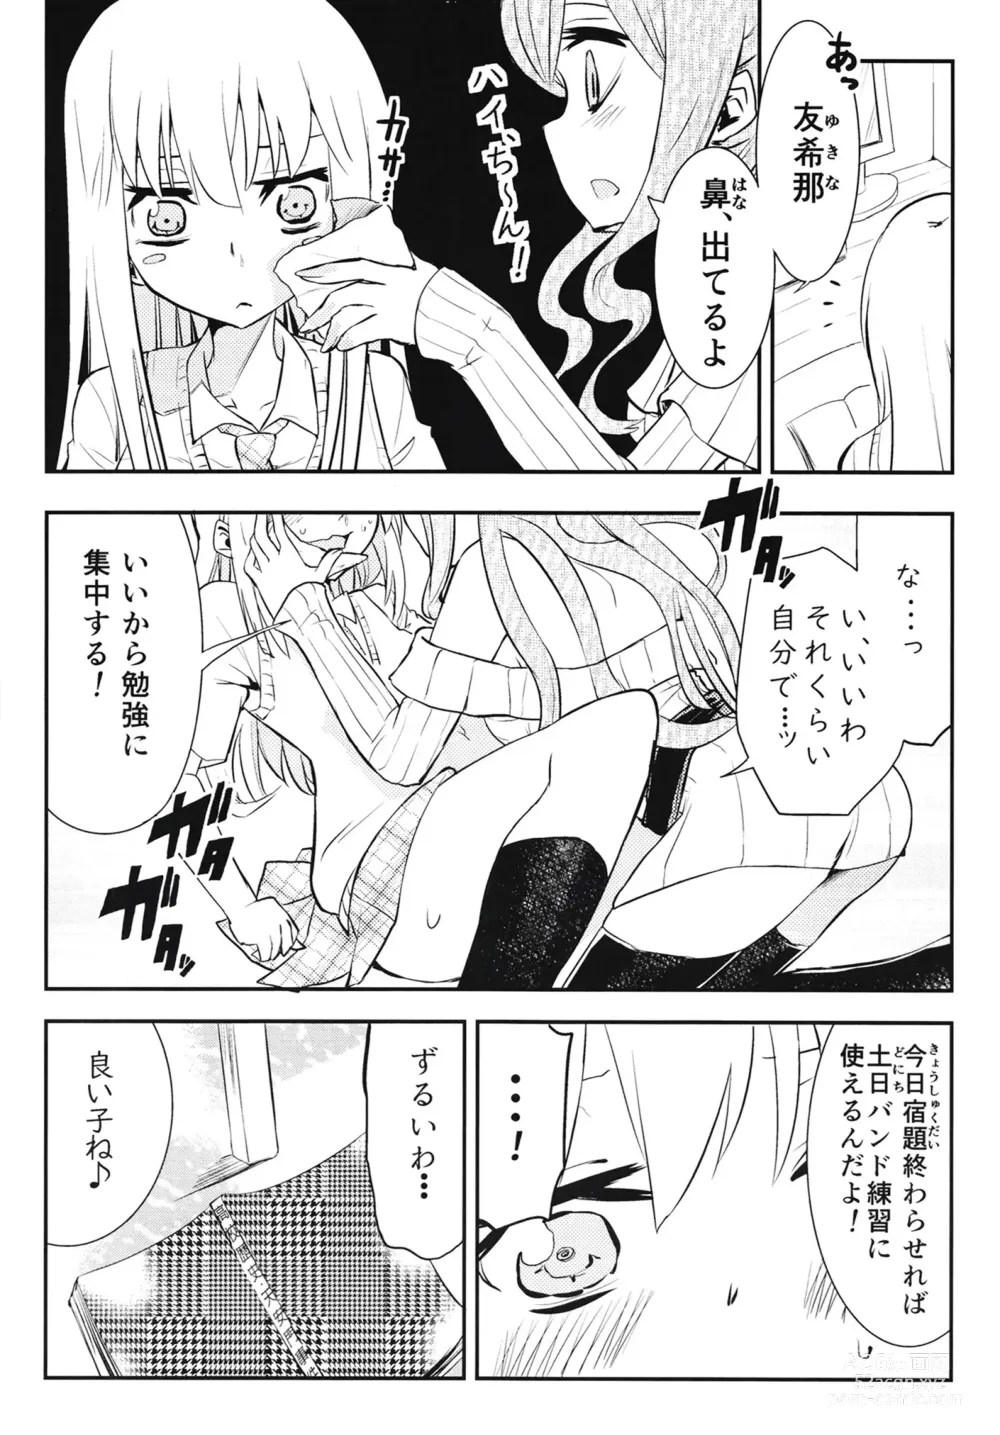 Page 6 of doujinshi Yukina Gakari